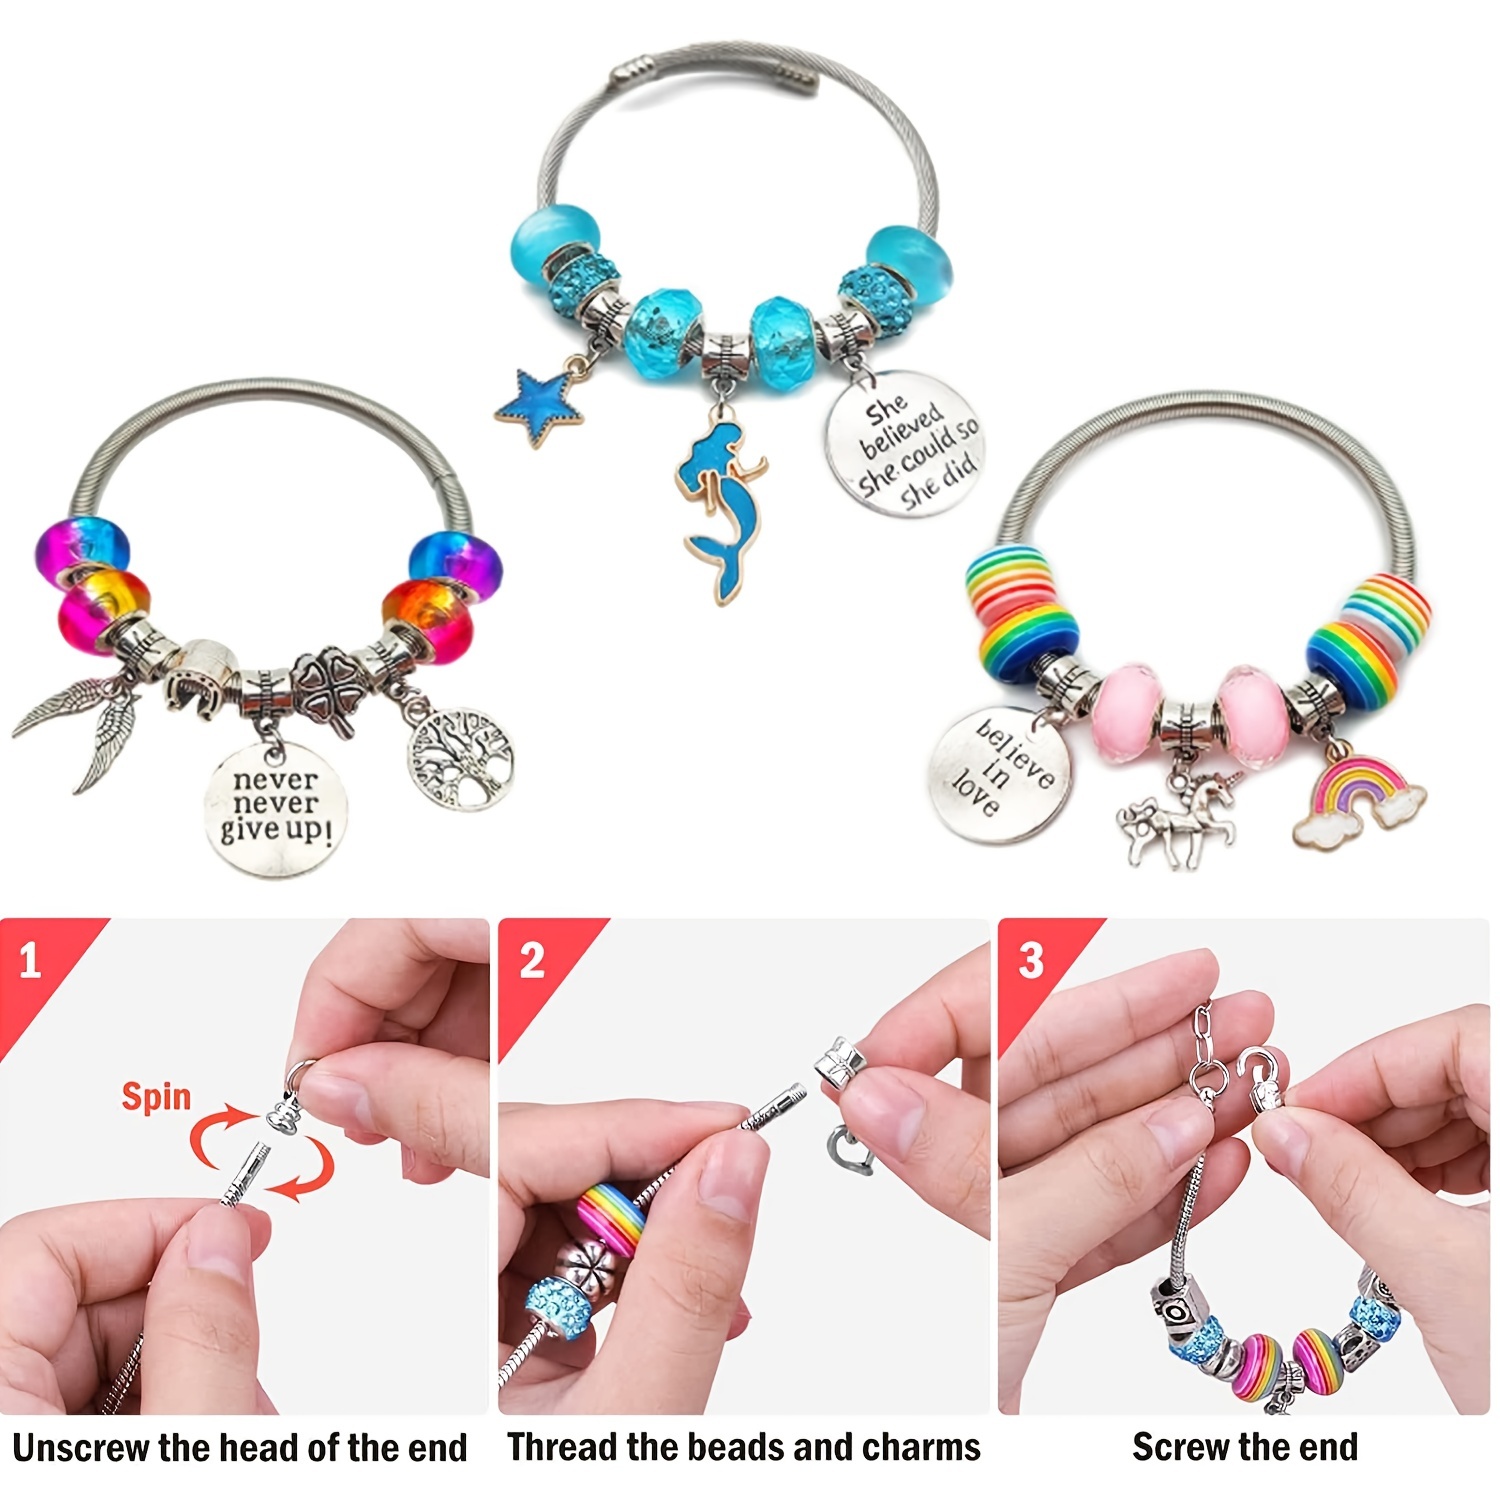 Bracelet Making Kit , Charm Bracelet Making Kit for Girls Teens Age 8-12